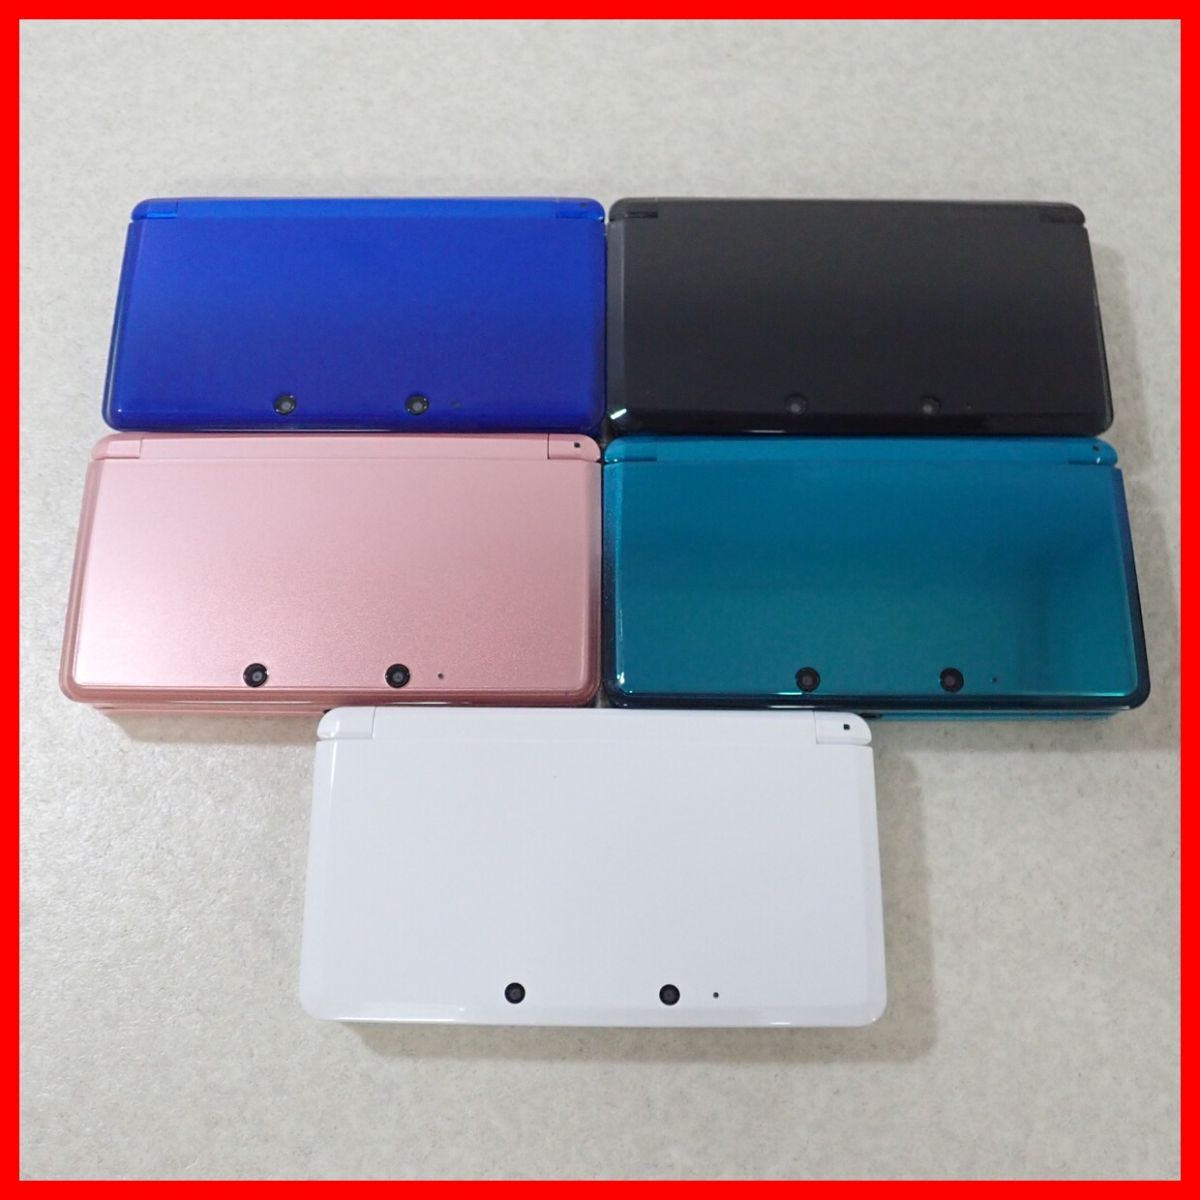  рабочий товар Nintendo 3DS корпус CTR-001 aqua blue / чисто-белый / Misty - розовый / кобальт голубой и т.п. совместно 5 шт. комплект Nintendo[10